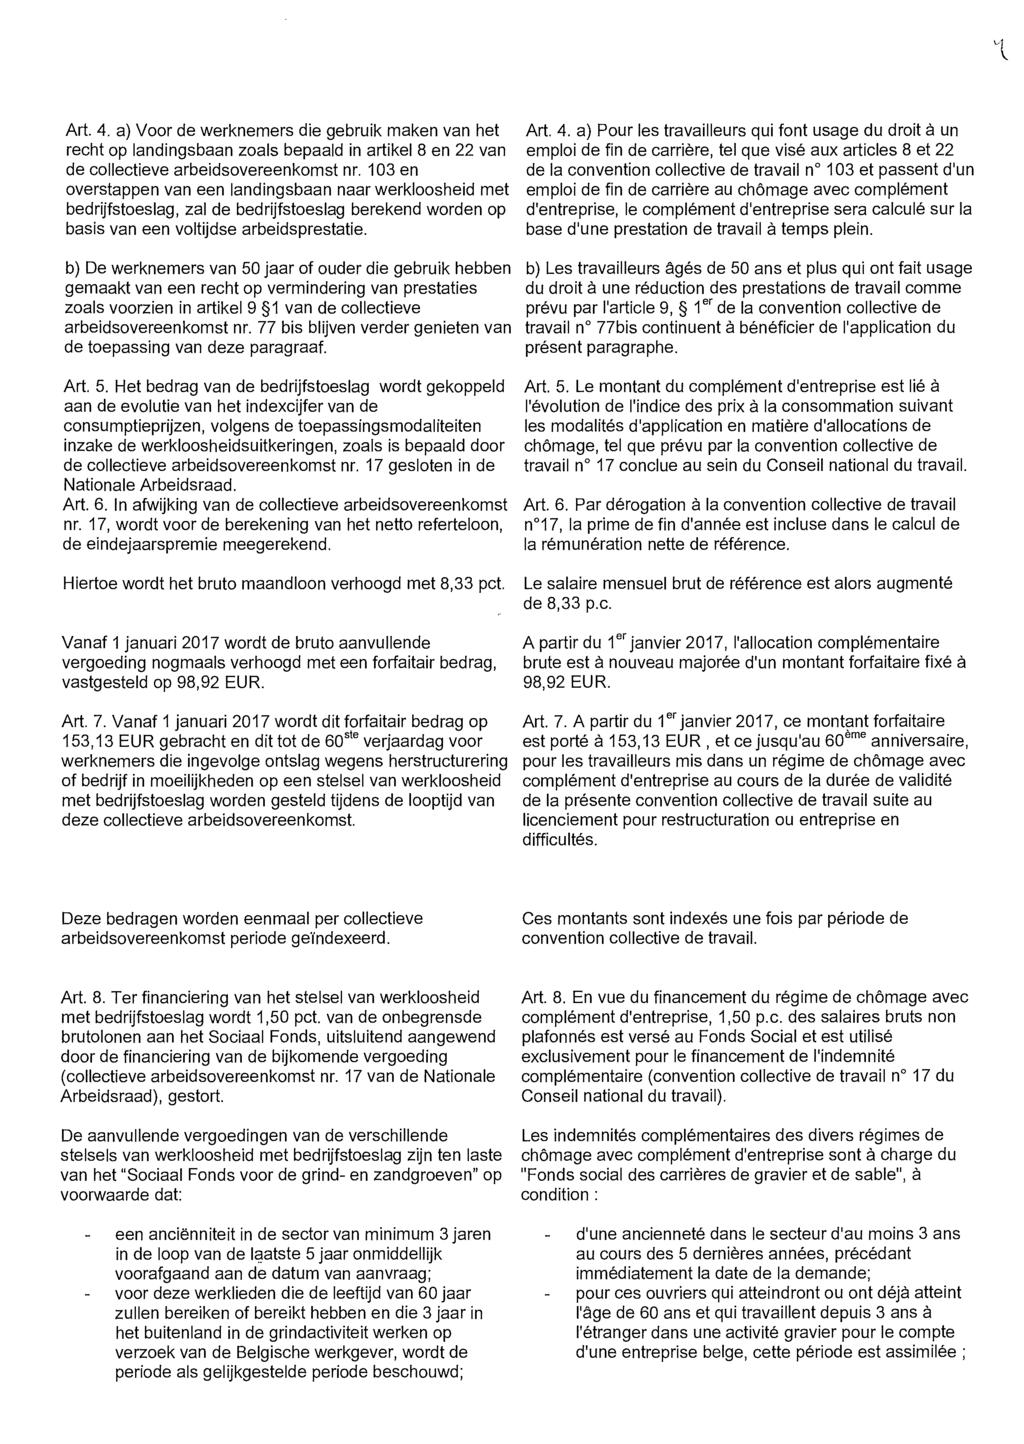 'l Art. 4. a) Voor de werknemers die gebruik maken van het recht op landingsbaan zoals bepaald in artikel 8 en 22 van de collectieve arbeidsovereenkomst nr.